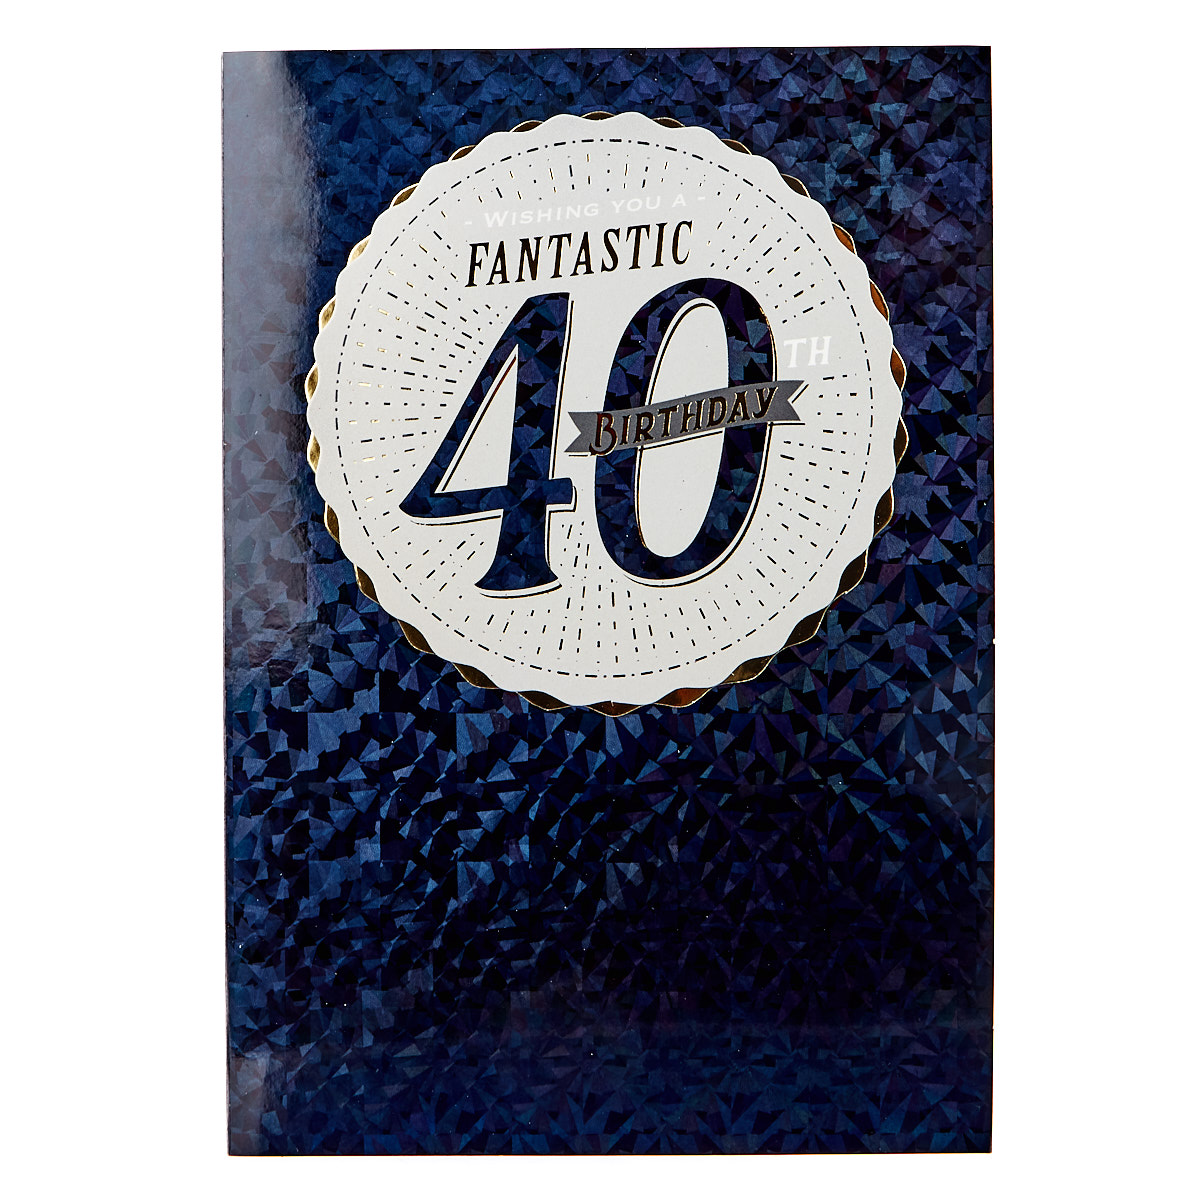 Birthday Card - Wishing You A Fantastic 40th